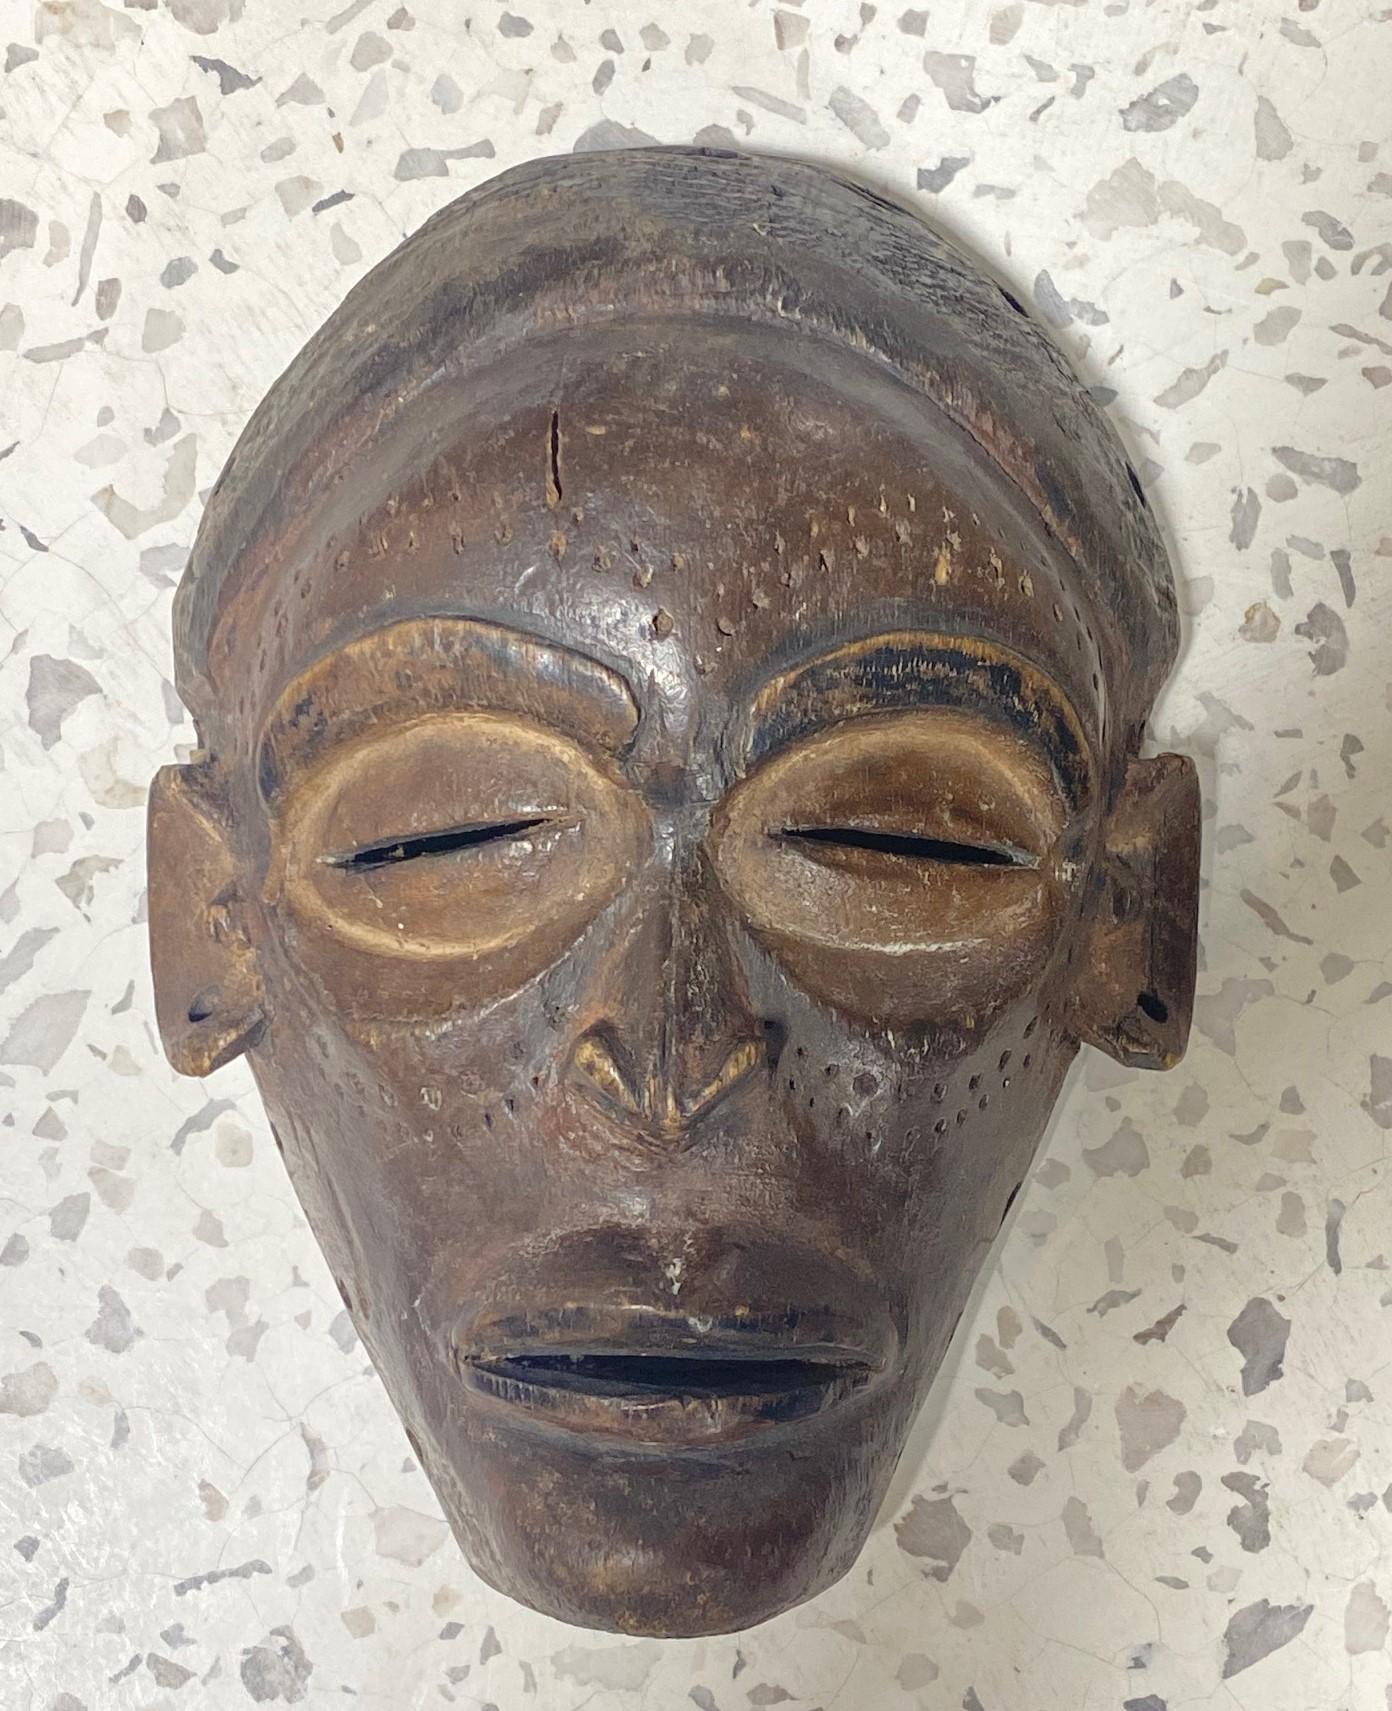 Eine sehr ansprechende Maske vom Stamm der Chowke (Tchokwe) aus dem südlichen und zentralen Afrika, die heute hauptsächlich in Angola leben. 

Diese Maske ist kunstvoll geschnitzt und an den Tätowierungen und Skarifikationen im Gesicht zu erkennen,